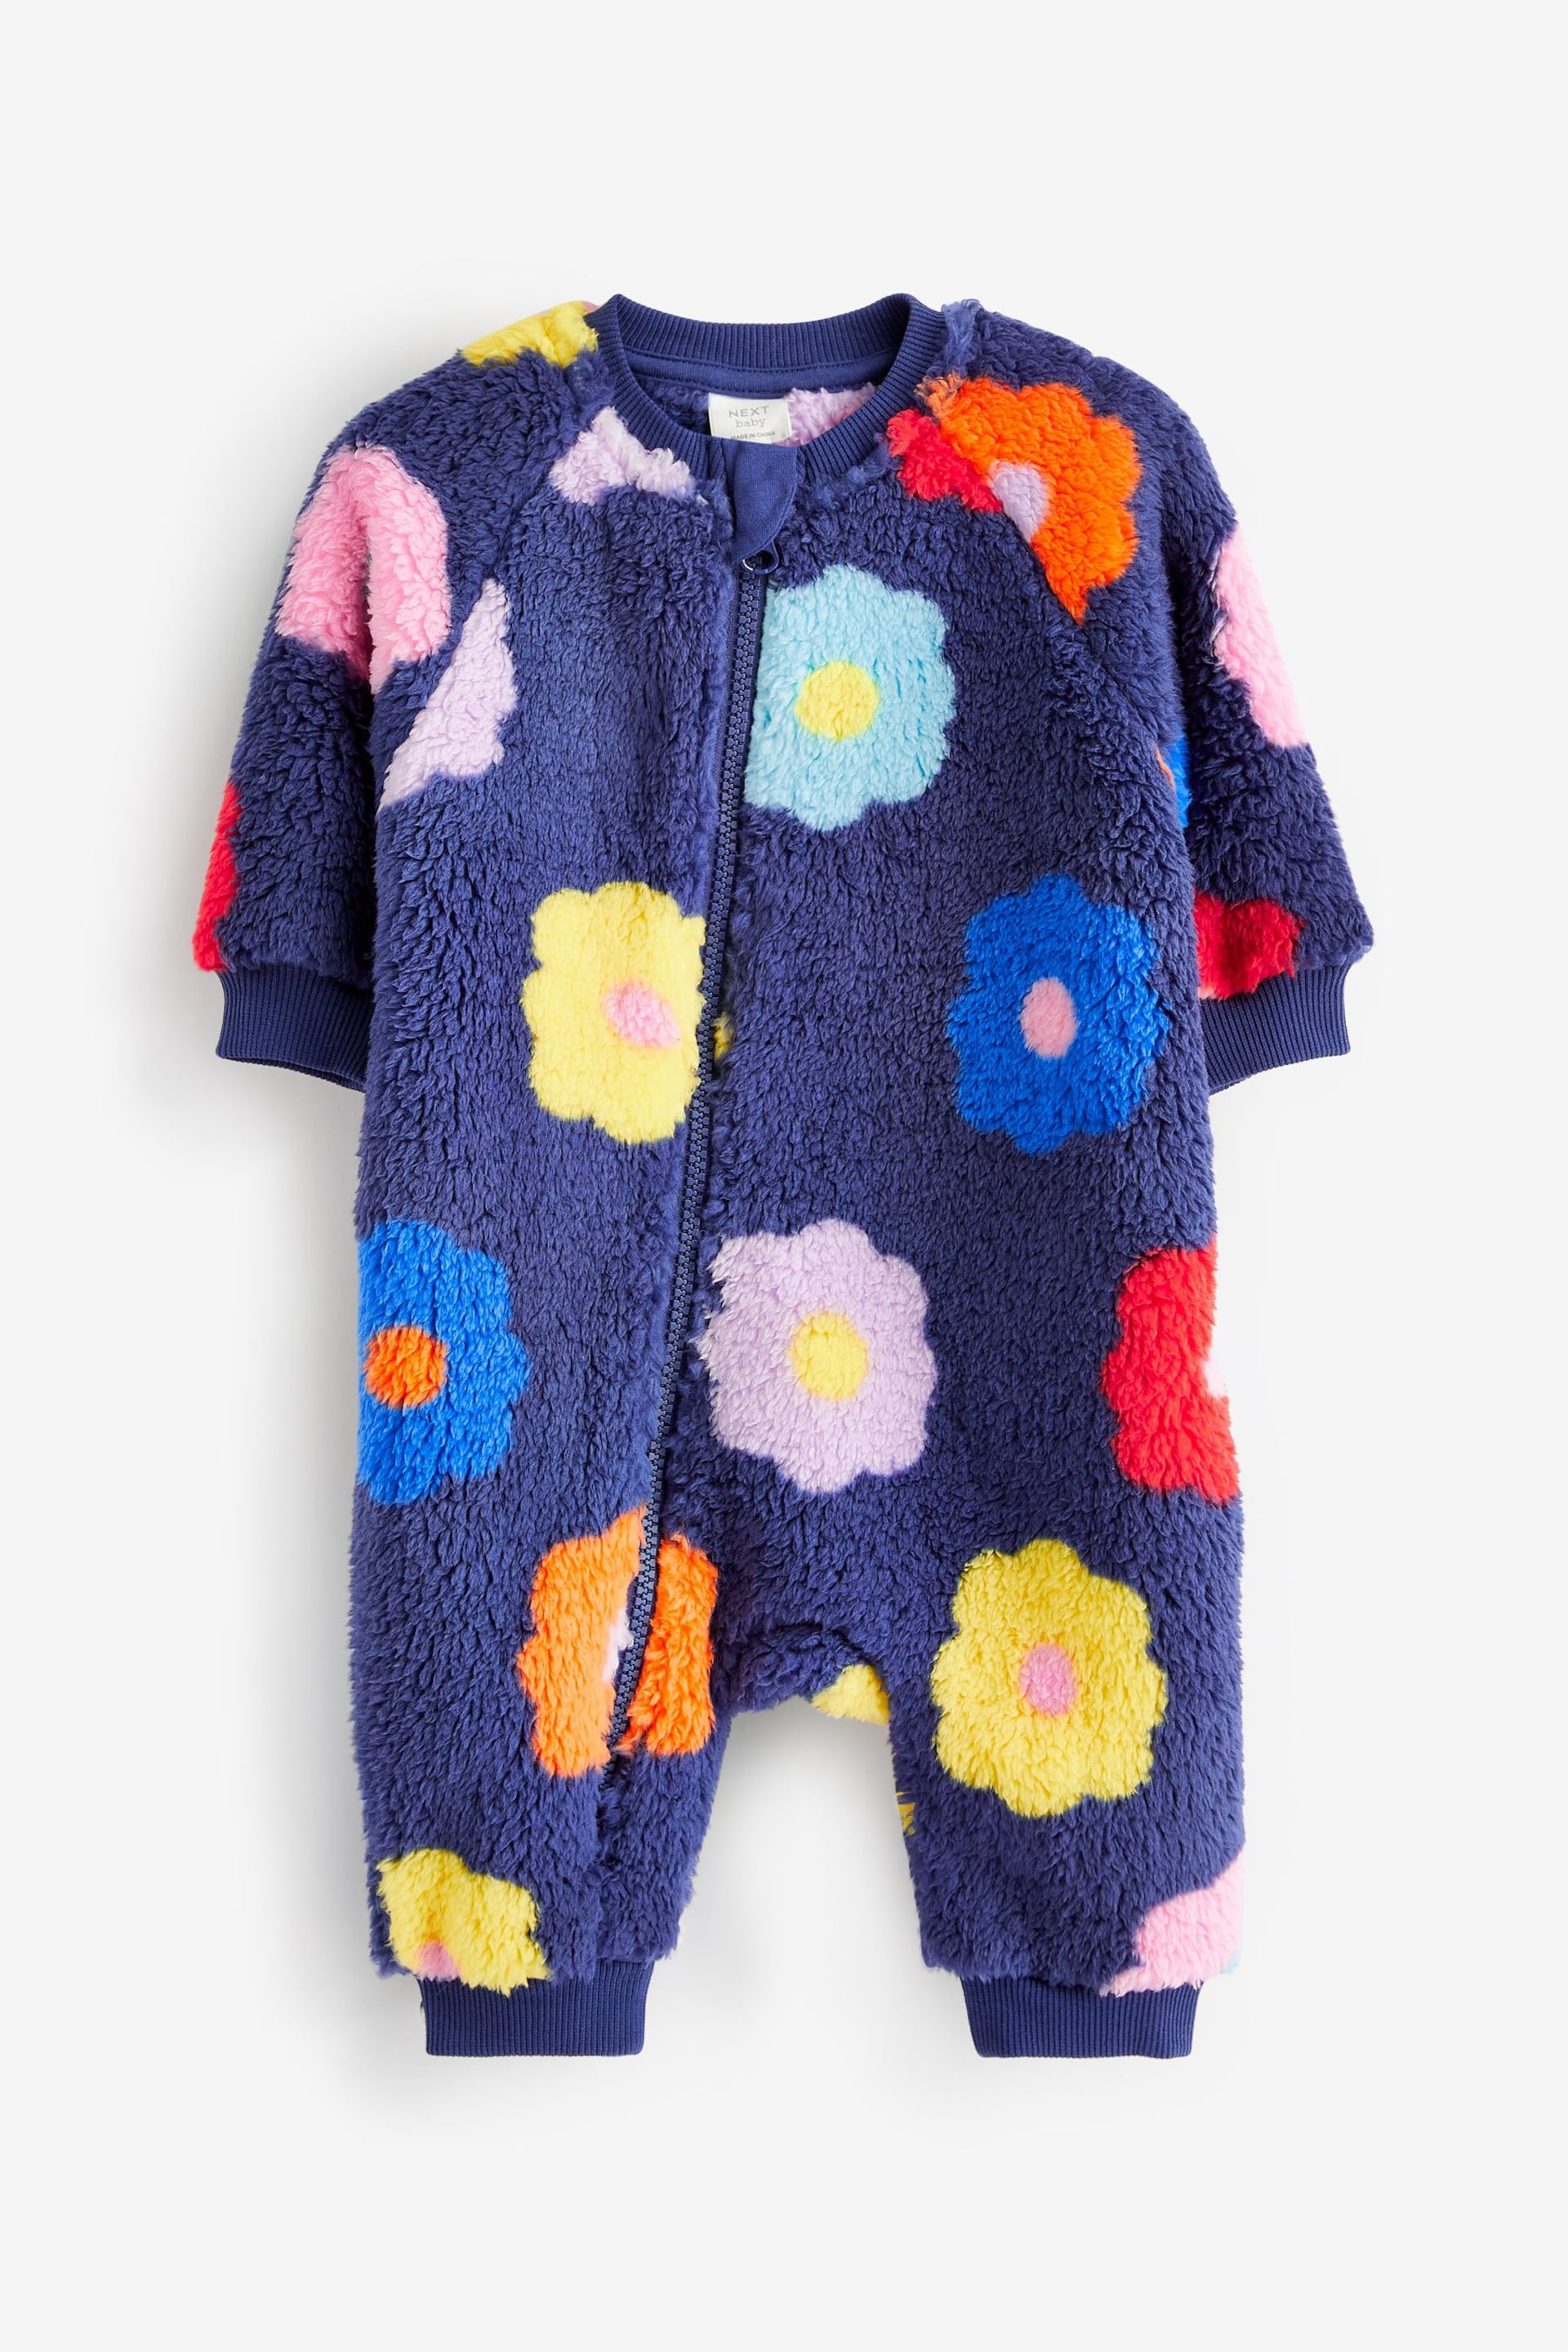 Navy Fleece Baby Sleepsuit - Image 5 of 7